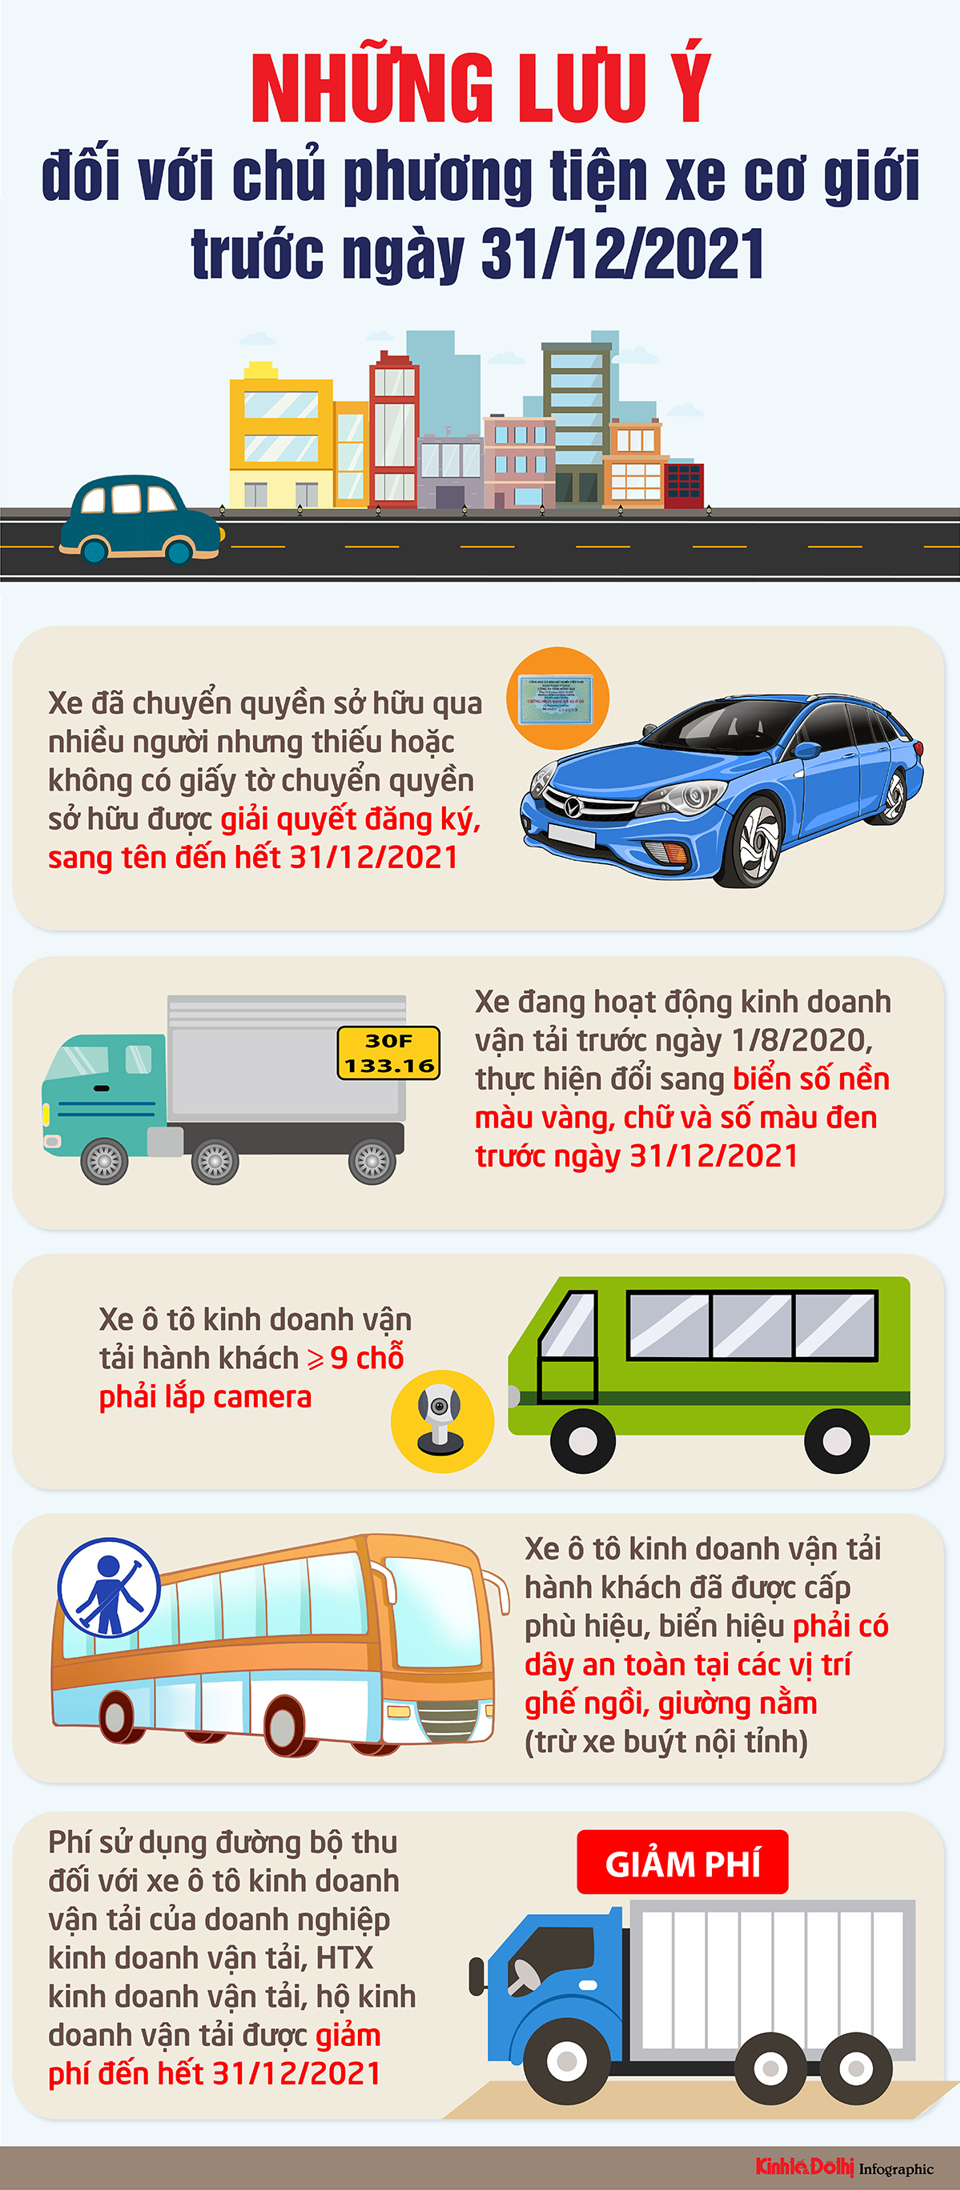 [Infographic] Những lưu ý đối với chủ phương tiện xe cơ giới trước ngày 31/12/2021 - Ảnh 1